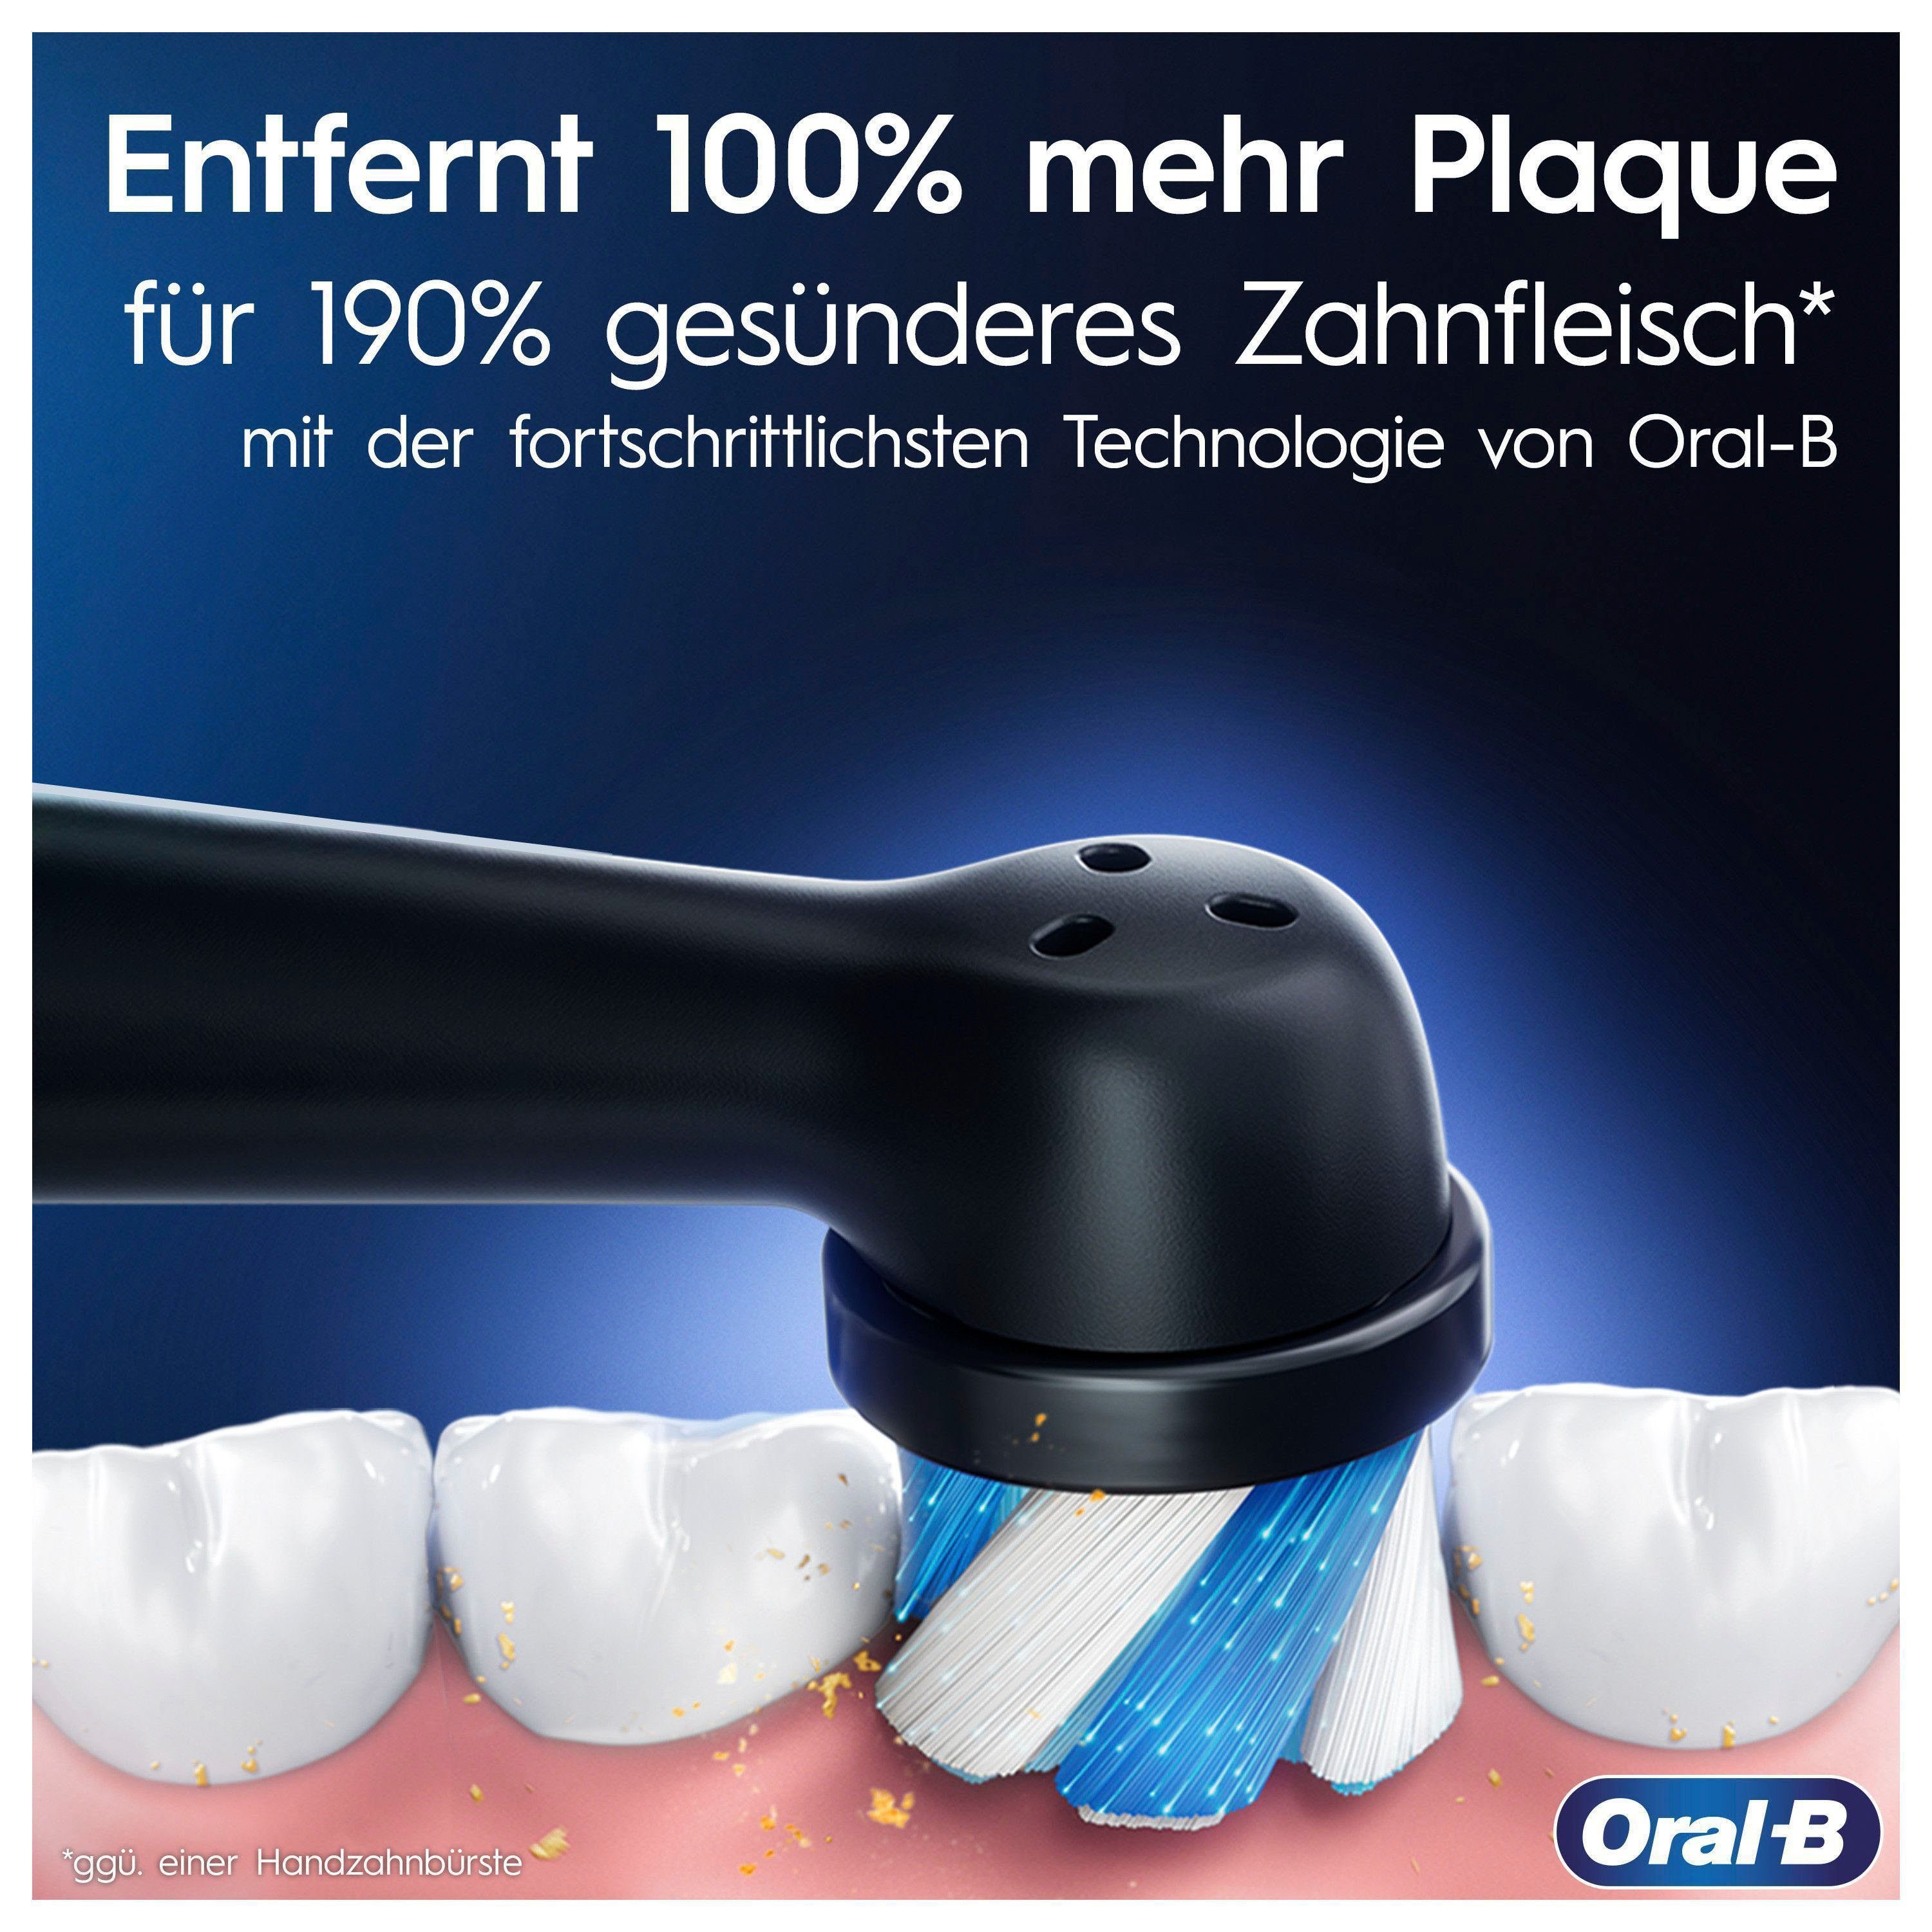 Oral-B Elektrische Zahnbürste Aufsteckbürsten: Display, Putzmodi, Black Onyx 5 iO Magnet-Technologie, Reiseetui 2 St., mit 7